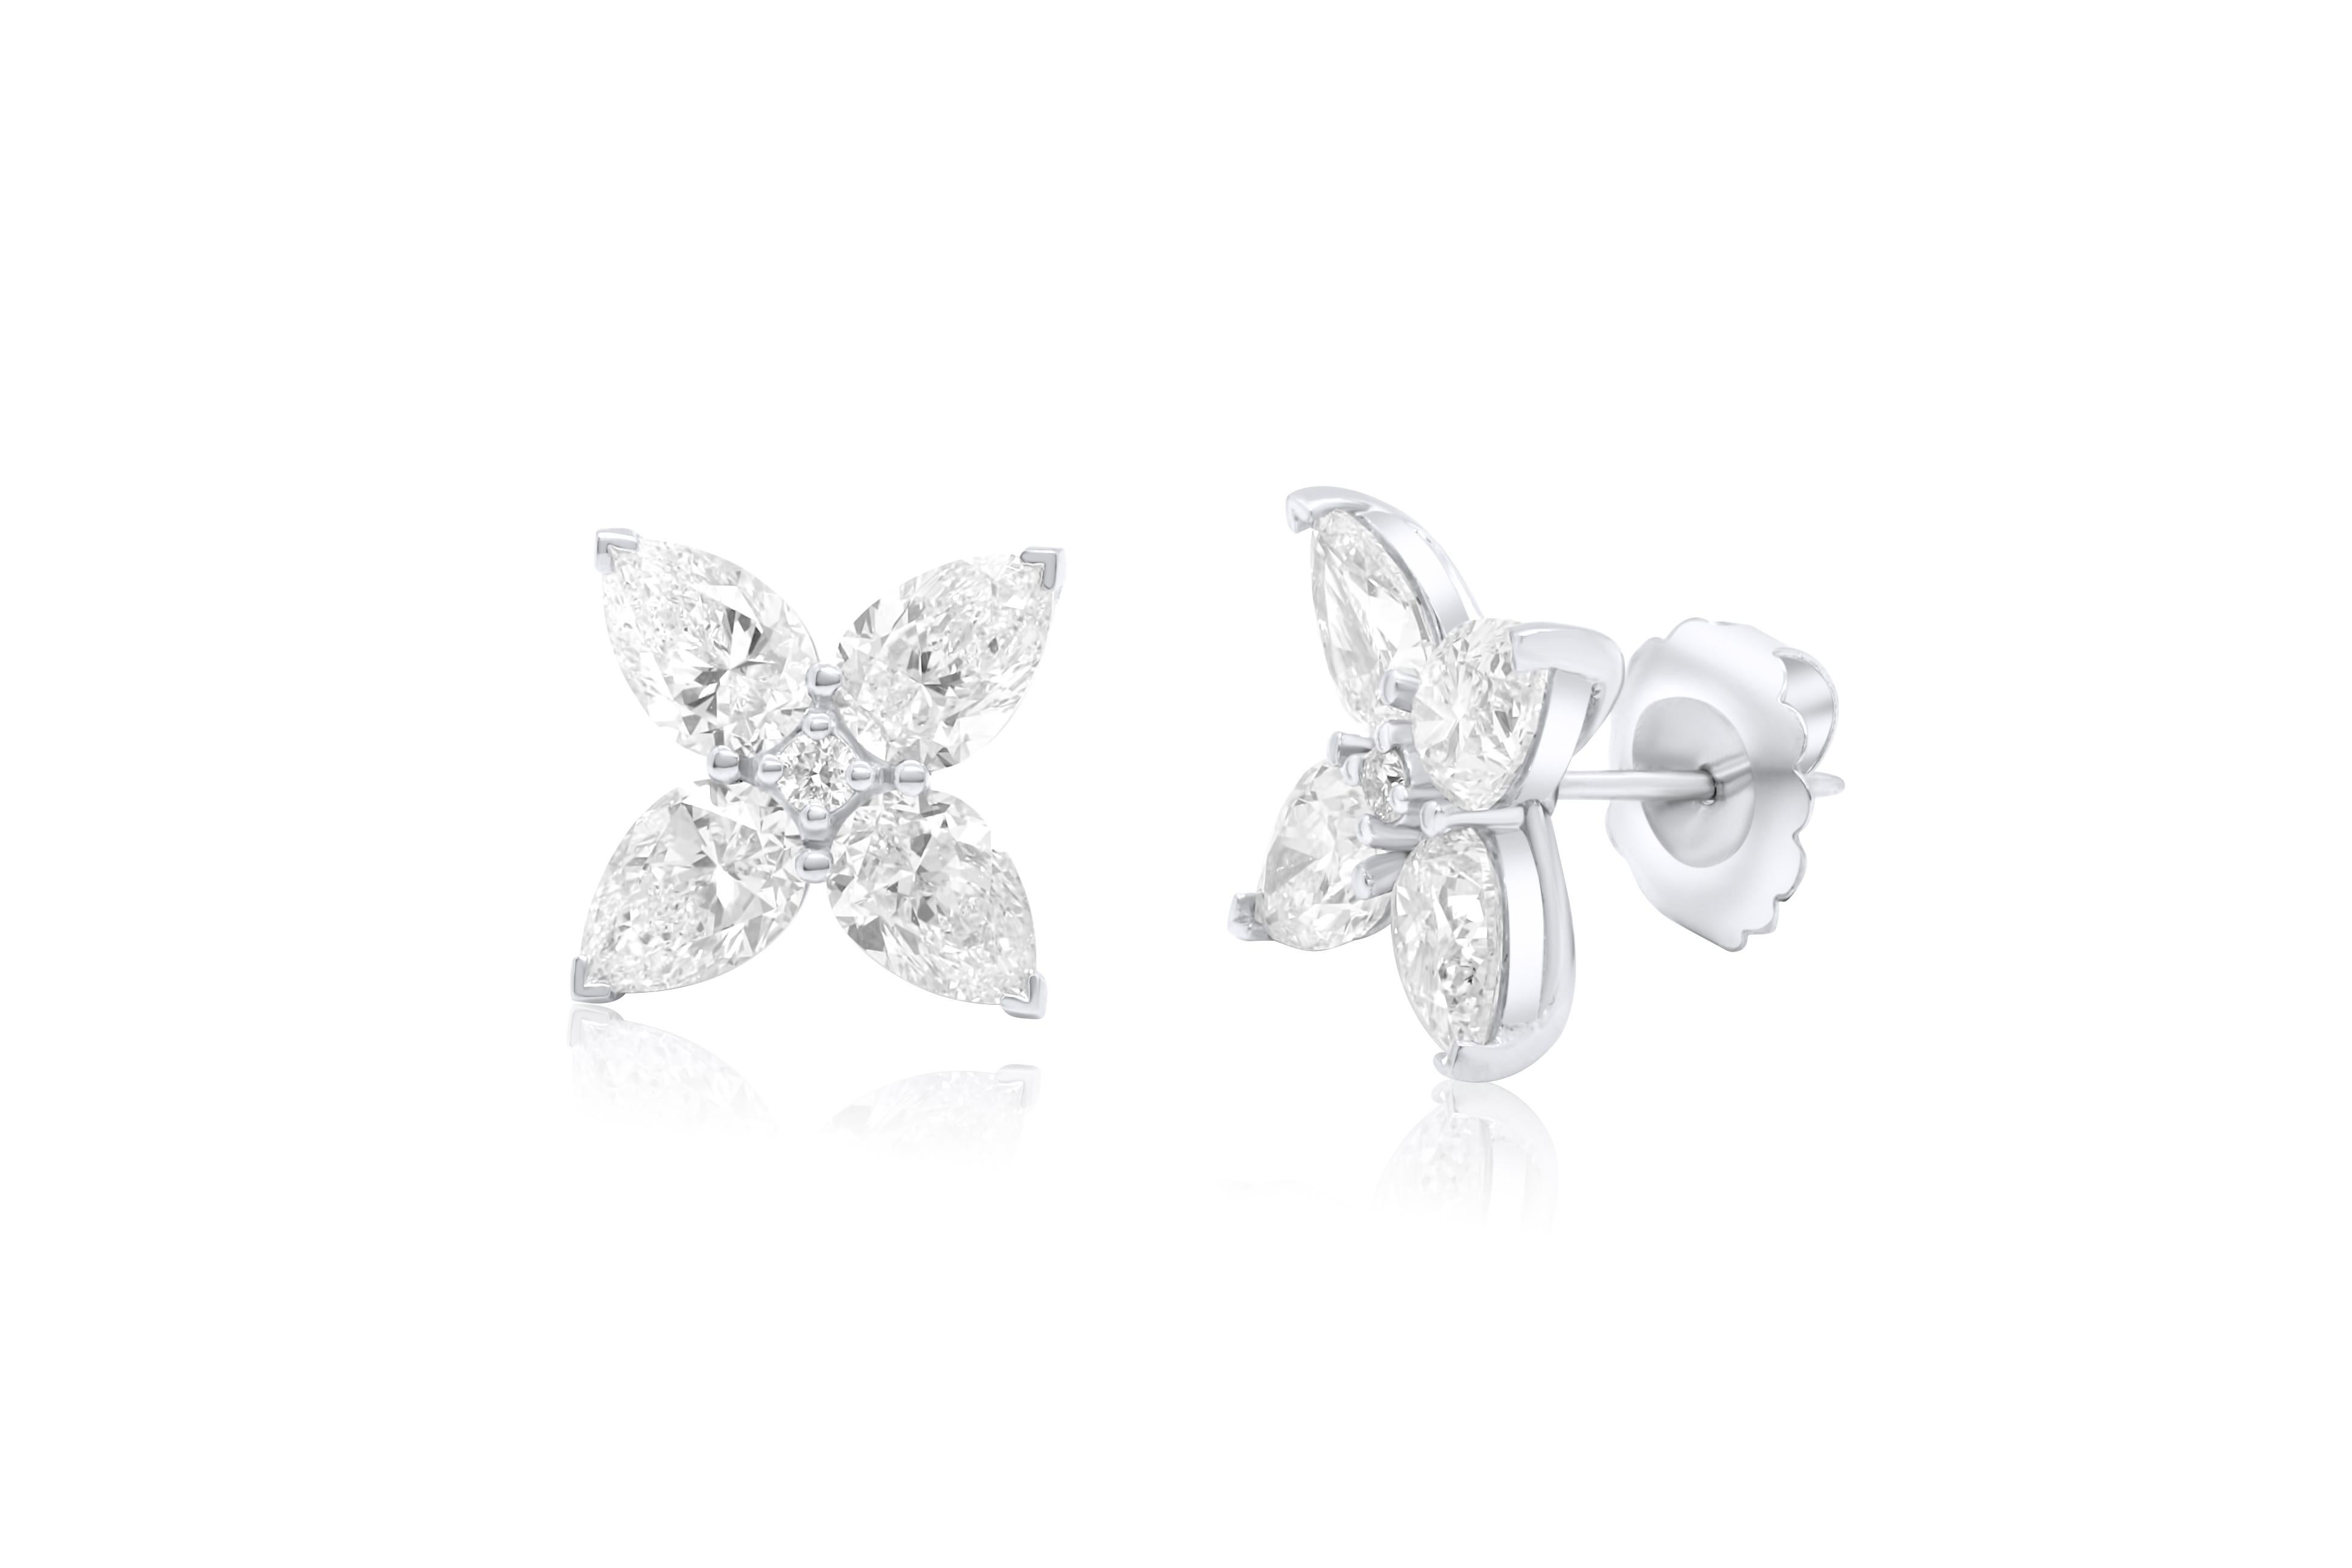 Boucles d'oreilles trèfle en platine ornées de 7,11 cts tw de diamants en forme de poire.
A&M est un fournisseur de premier plan de bijoux fins de qualité supérieure depuis plus de 35 ans.
Diana M-One est un magasin unique pour tous vos achats de